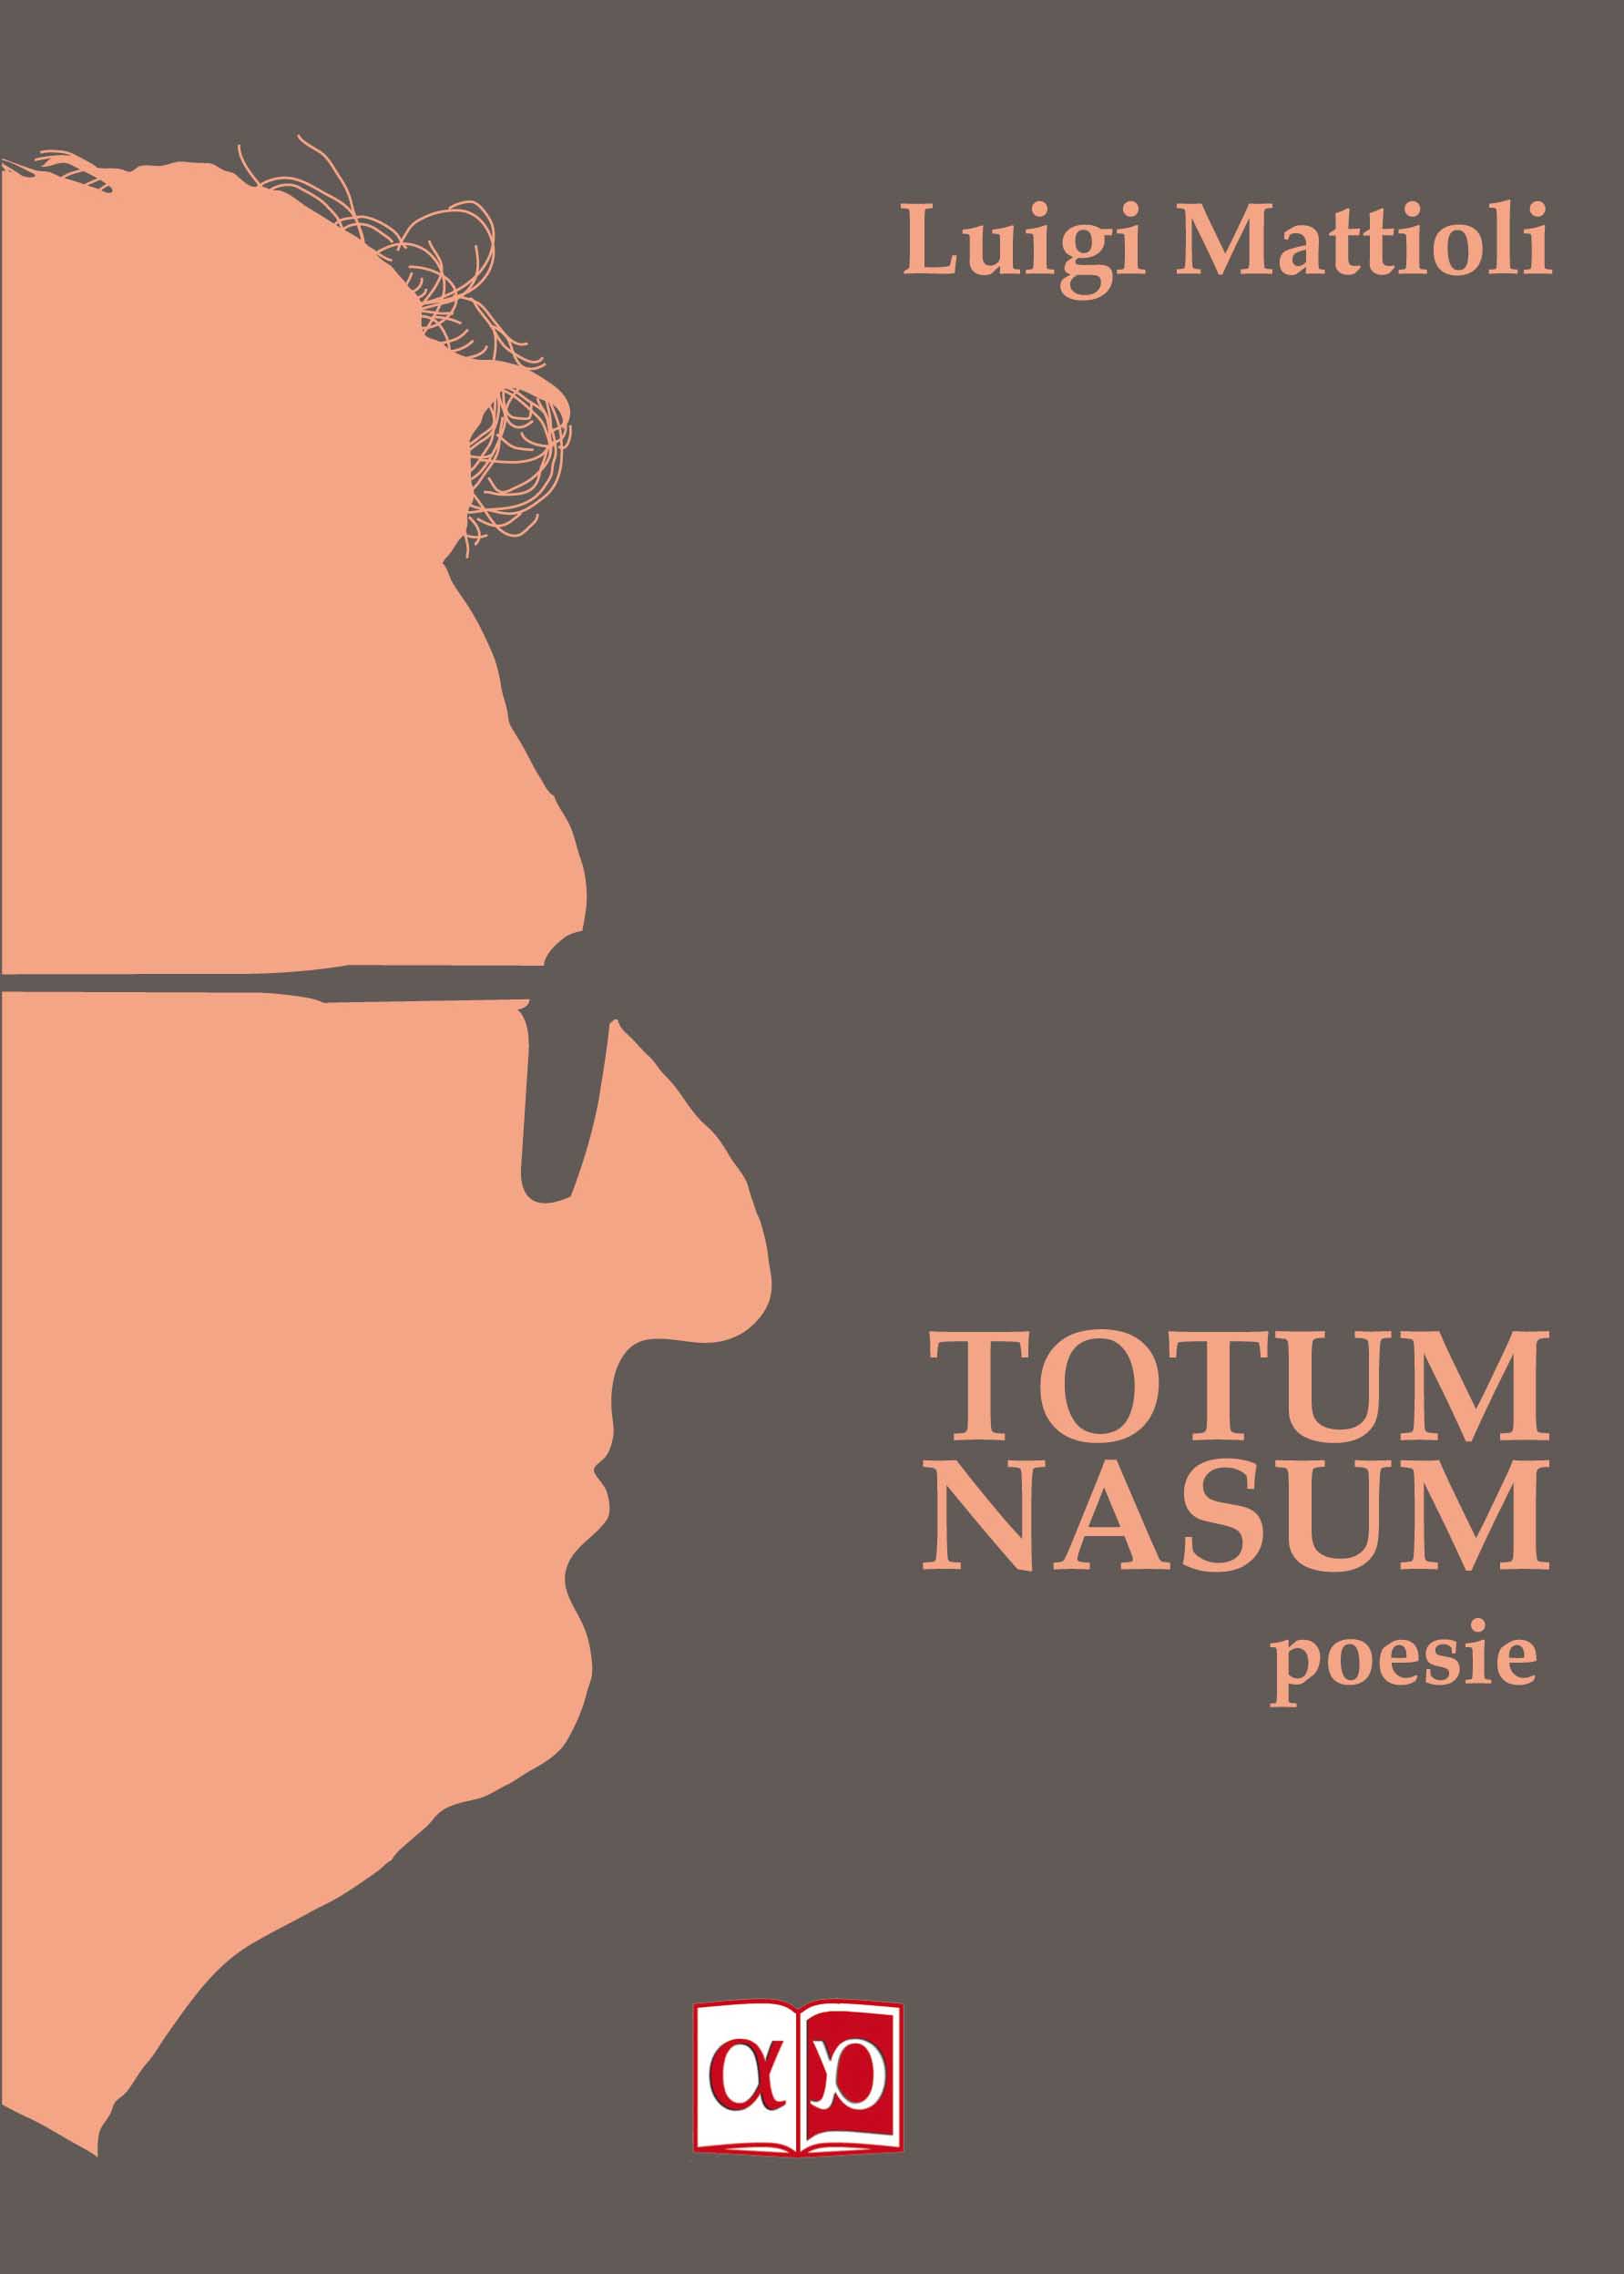 TOTUM NASUM - Luigi Mattioli